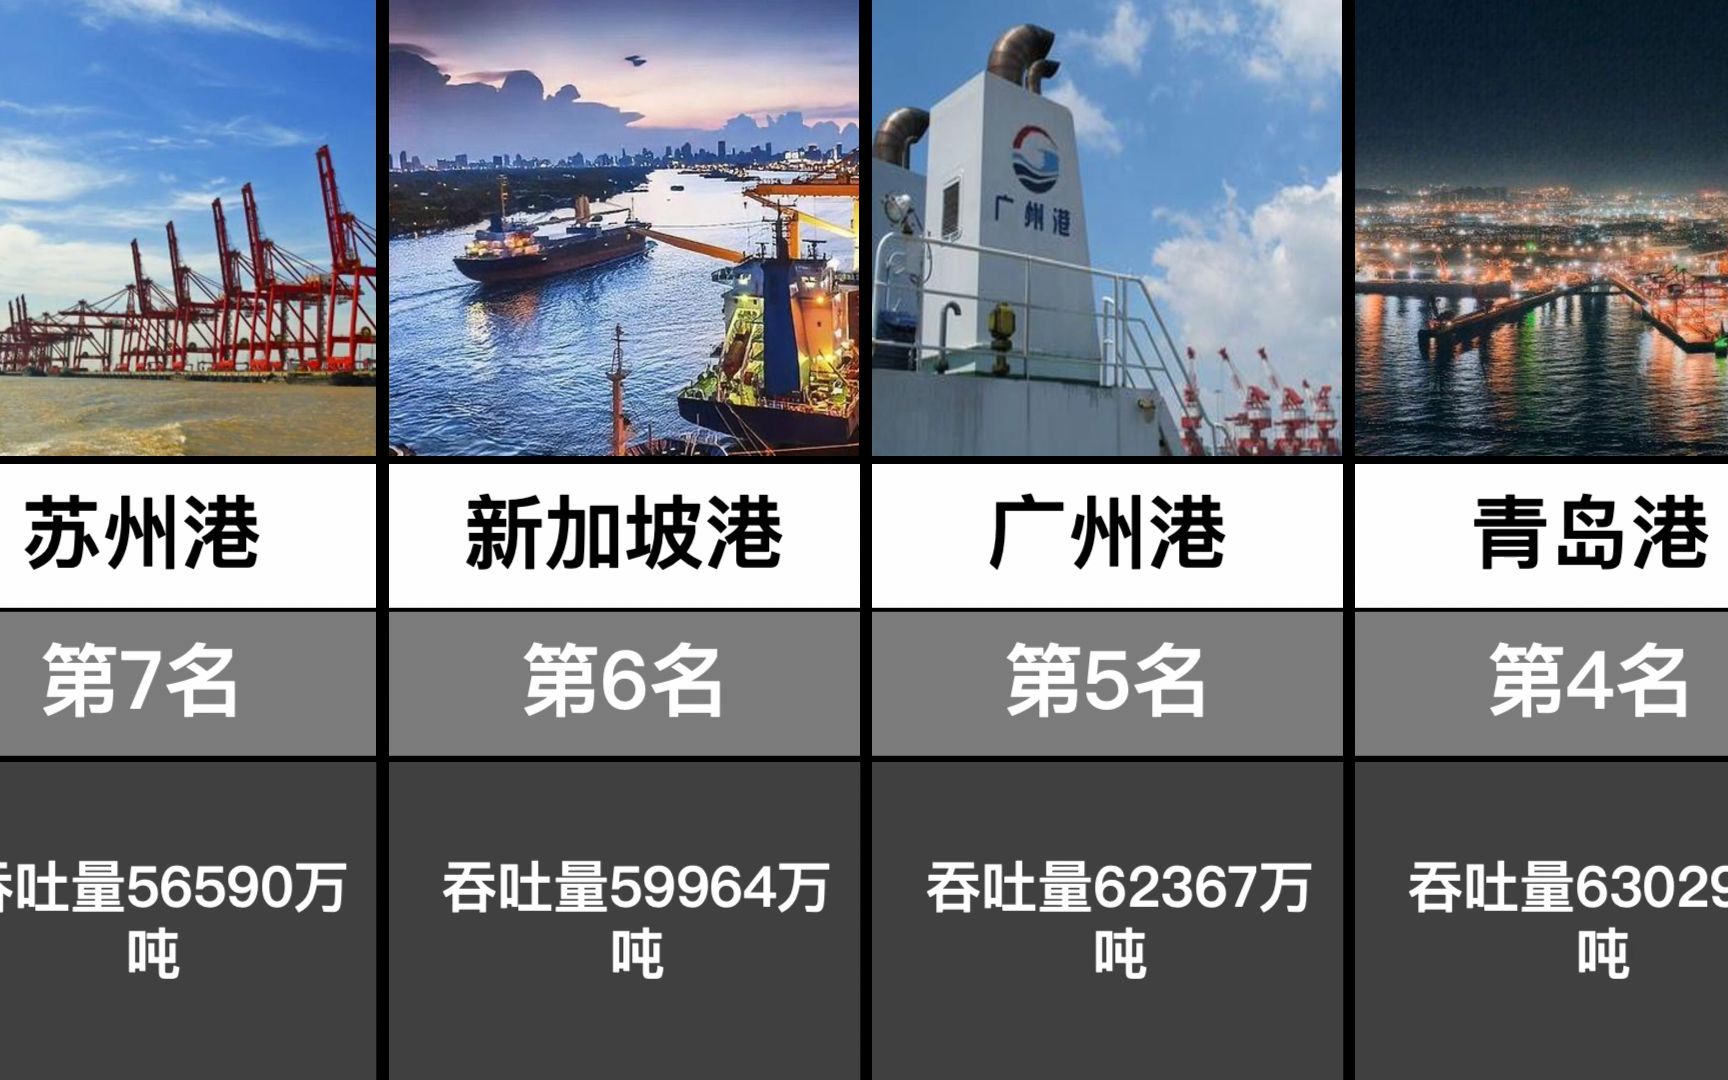 2022年全球港口吞吐量排名top20,中国港口霸榜